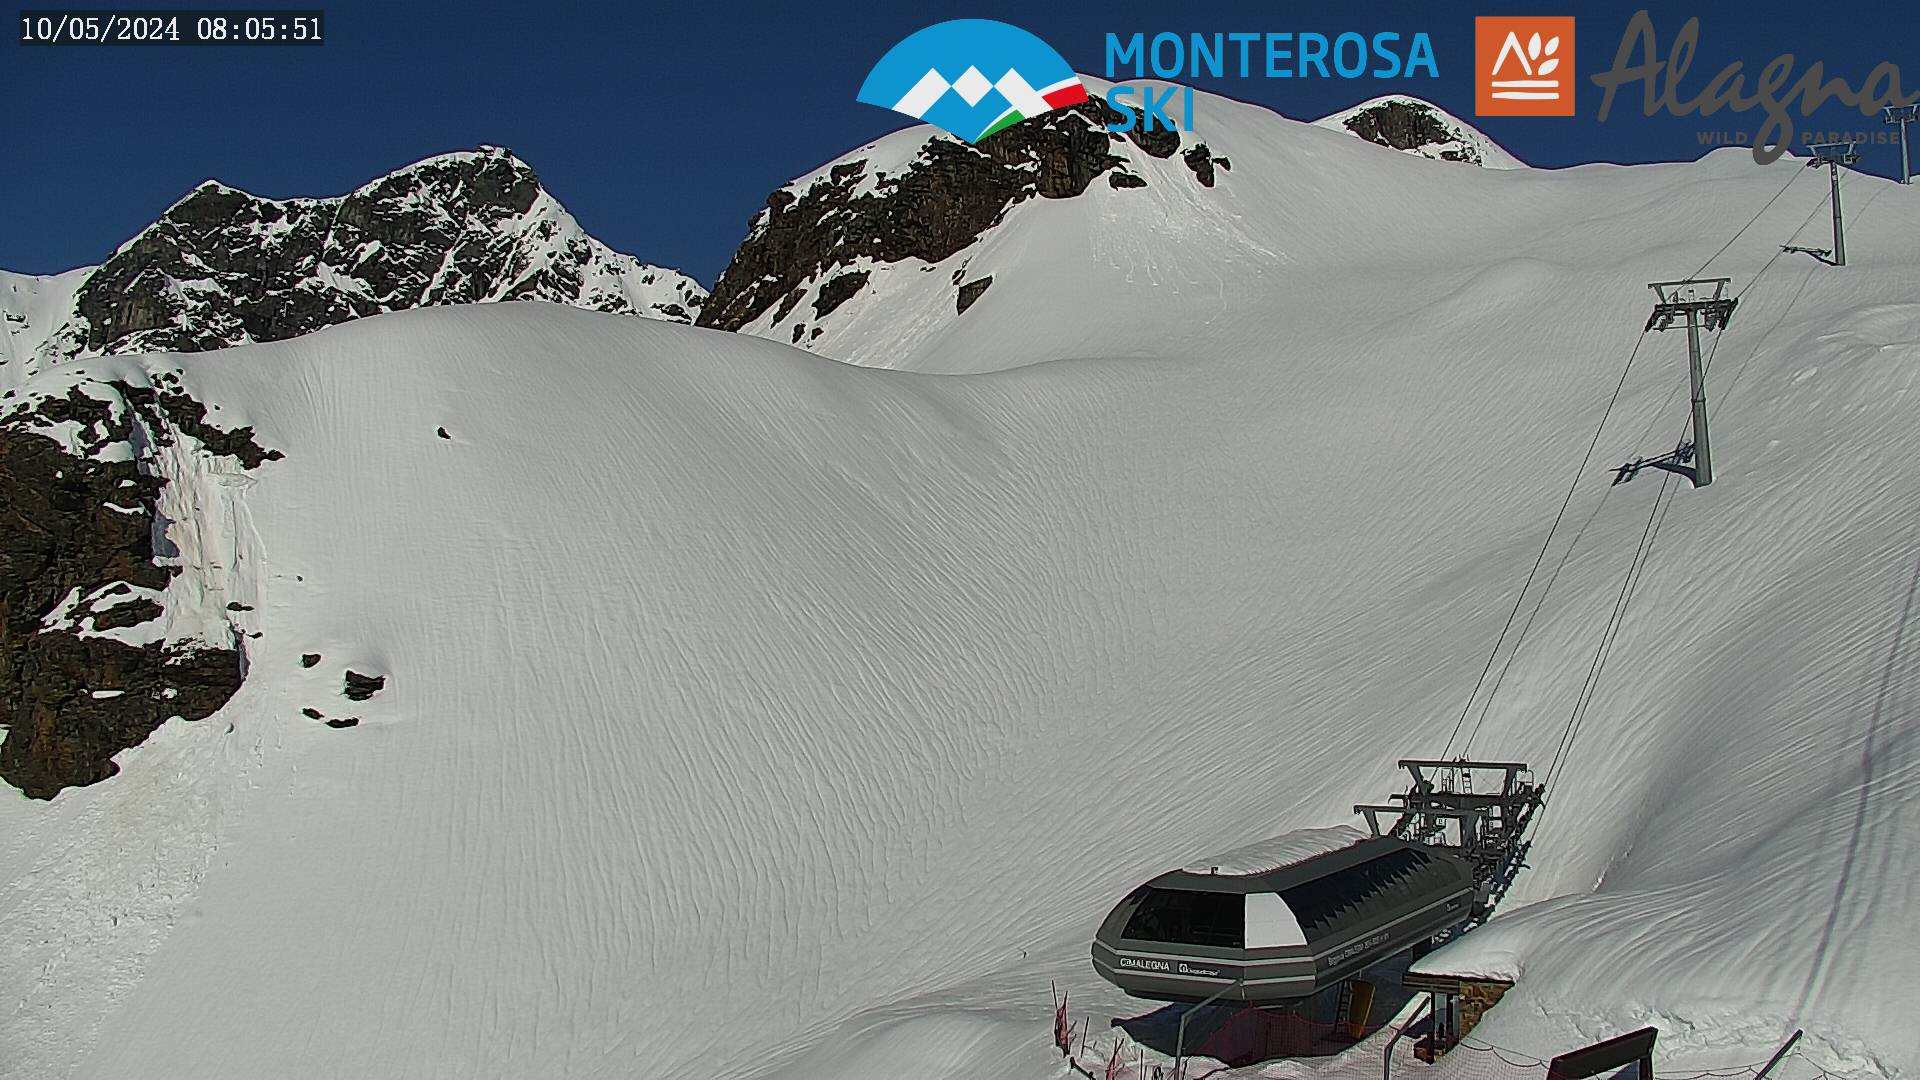 Monterosa-ski Alagna Valsesia - Cimalegna